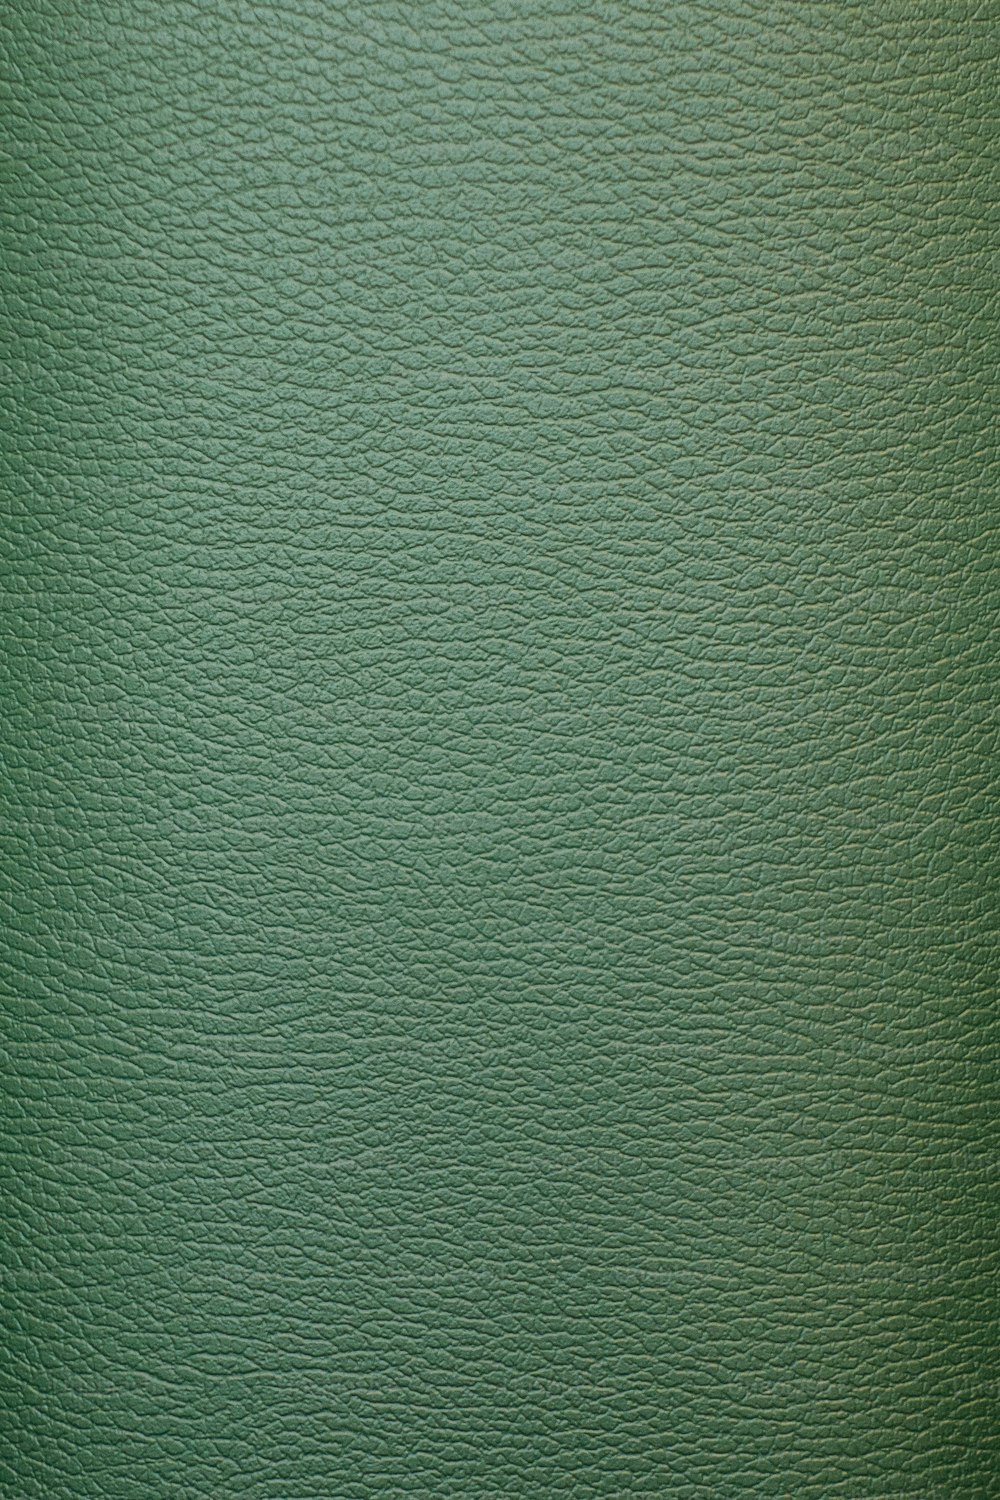 um close up de uma textura de couro verde